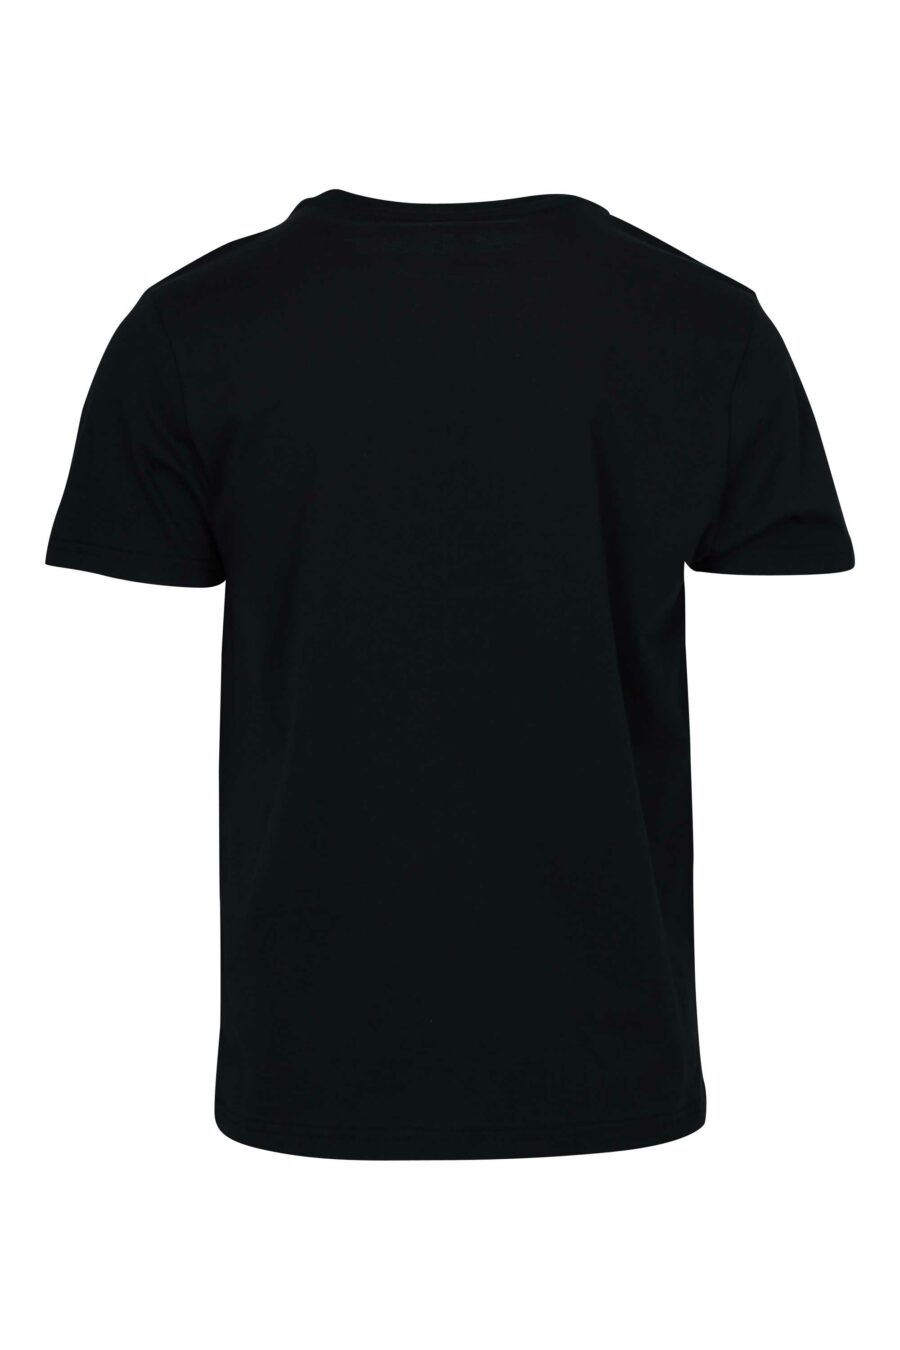 Camiseta negra con logo monocromático de goma en hombros - 667113671994 1